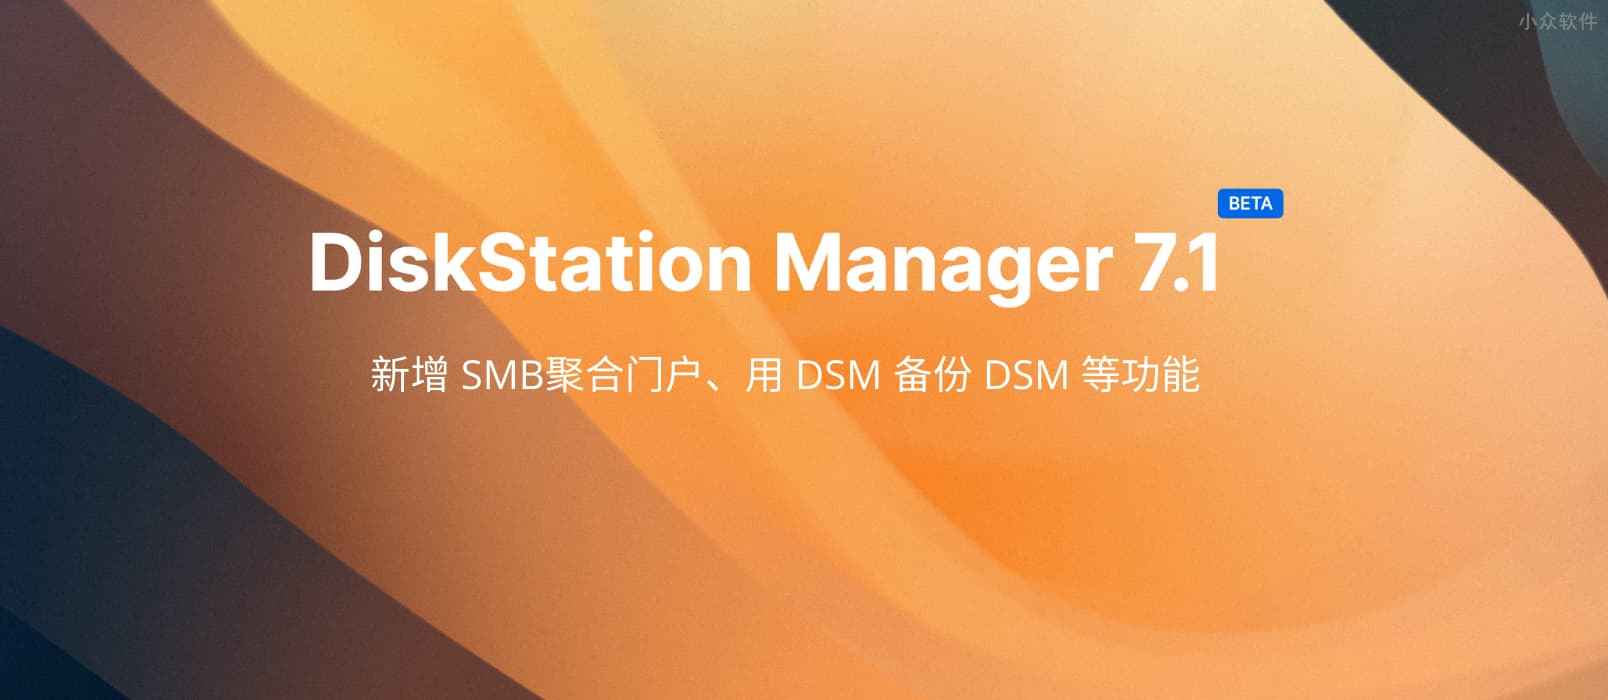 群晖 DSM 7.1 公测，新增 SMB聚合门户、SSD 缓存组、用 DSM 备份 DSM 等“多买几台”功能